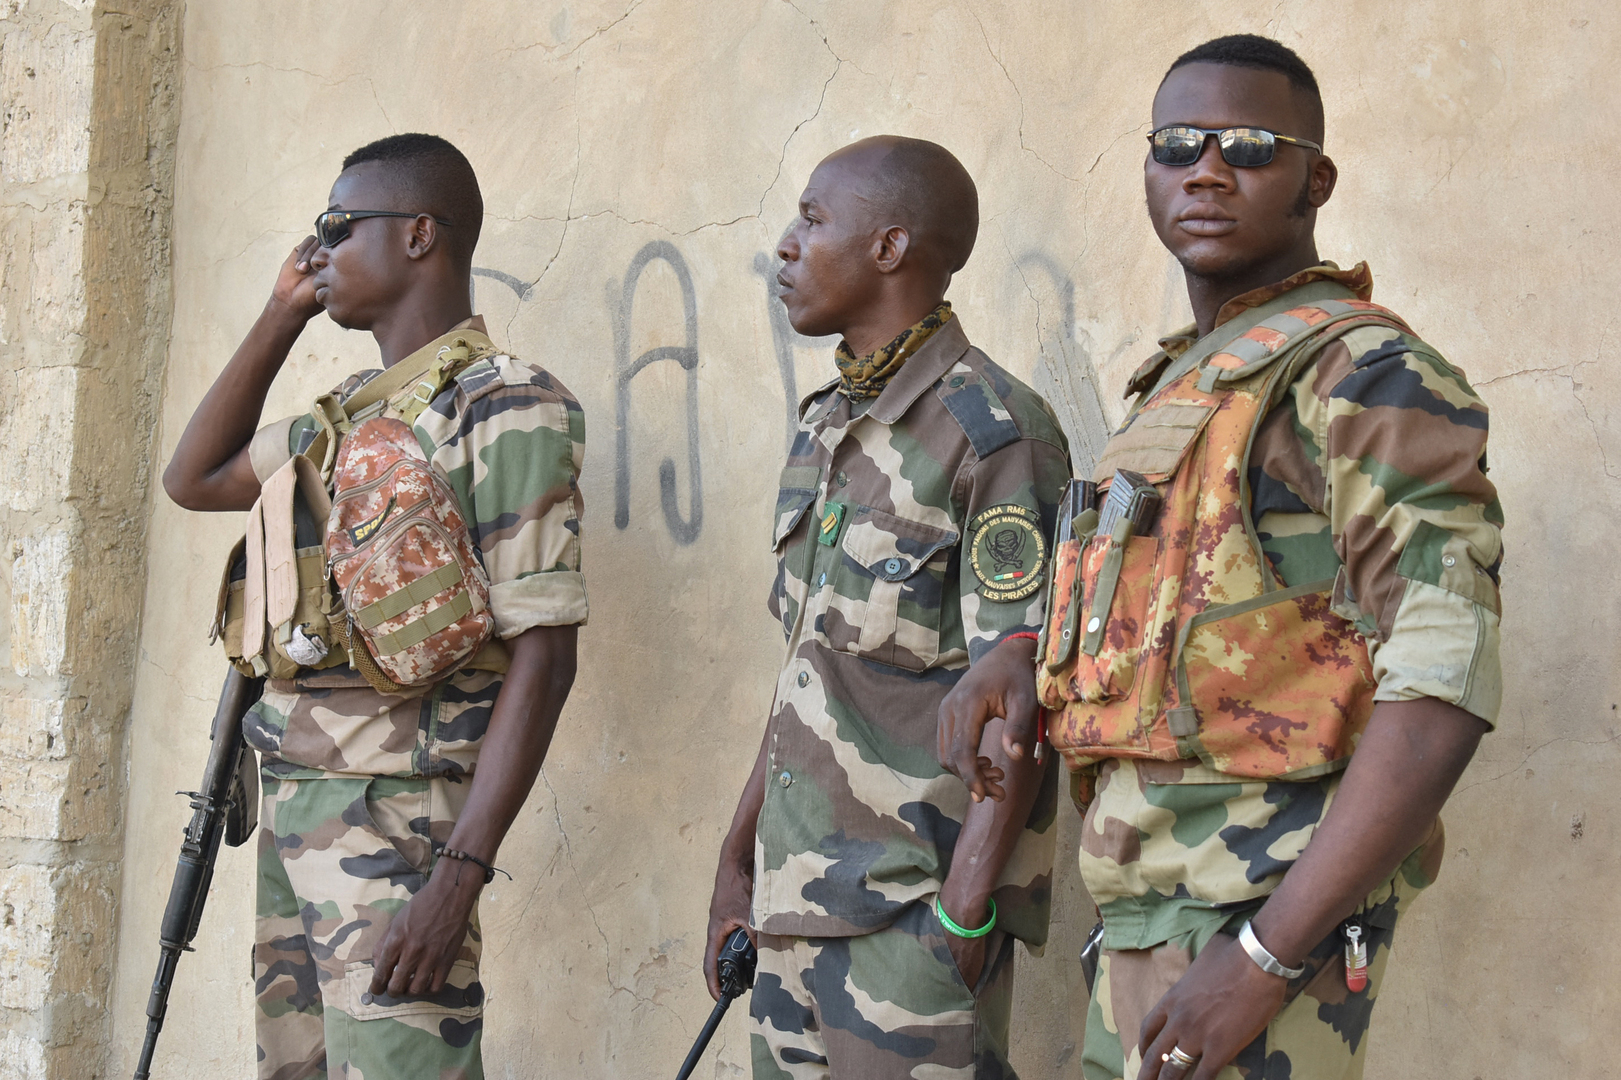 جيش مالي: مقتل 4 مسلحين وجندي وجرح 3 آخرين في اشتباك وسط البلاد